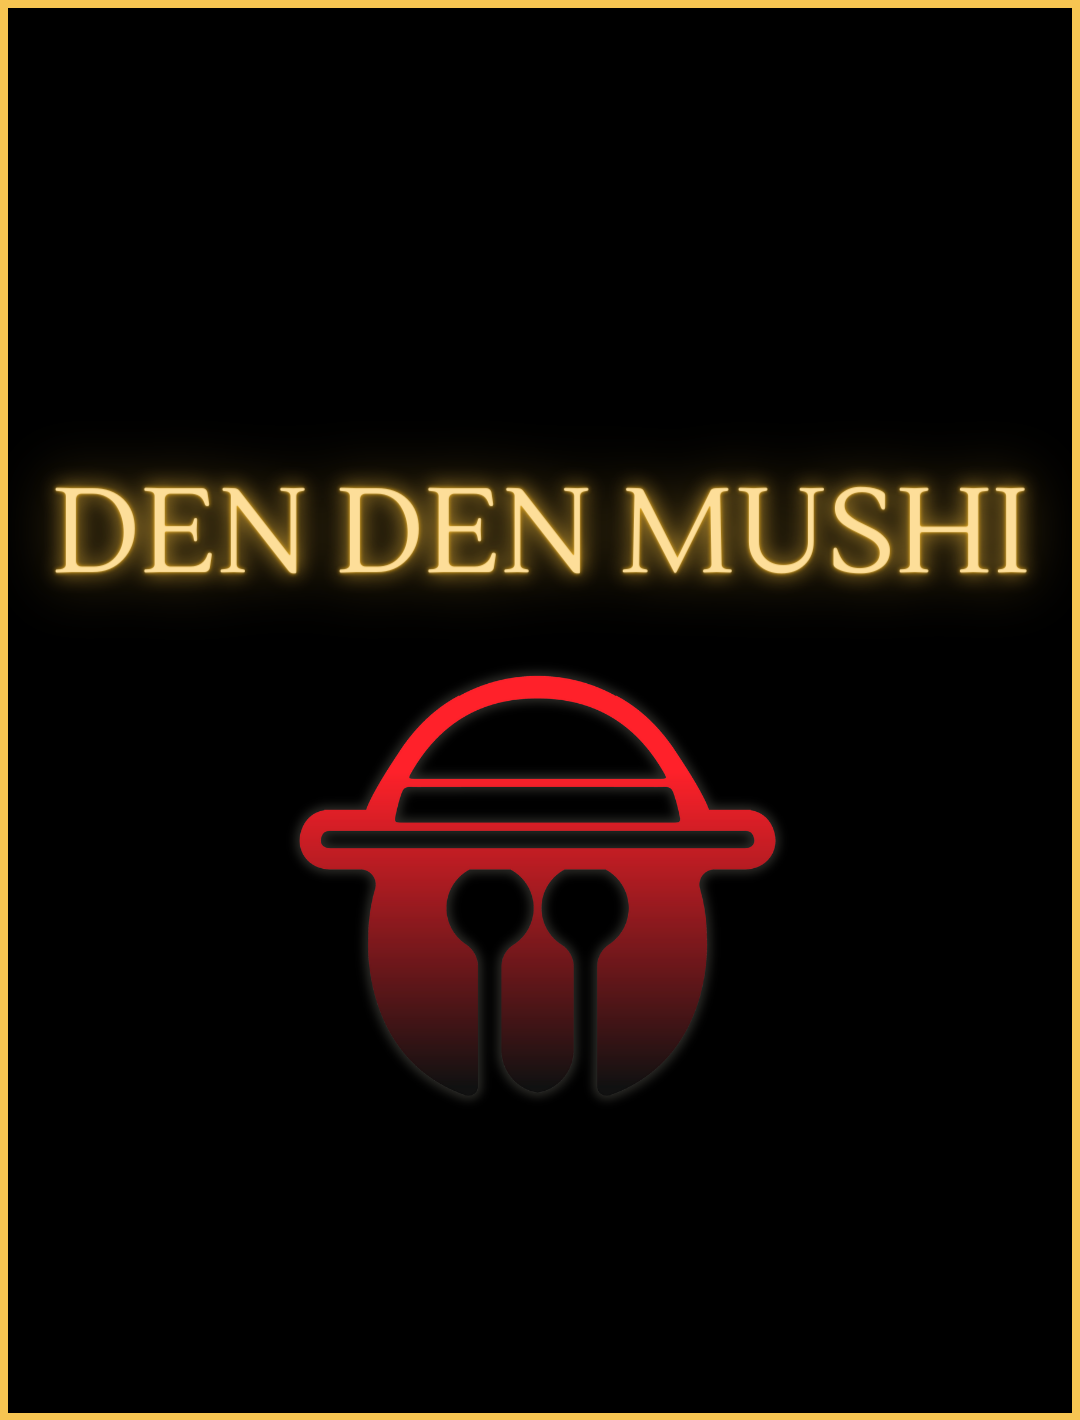 The Mushi